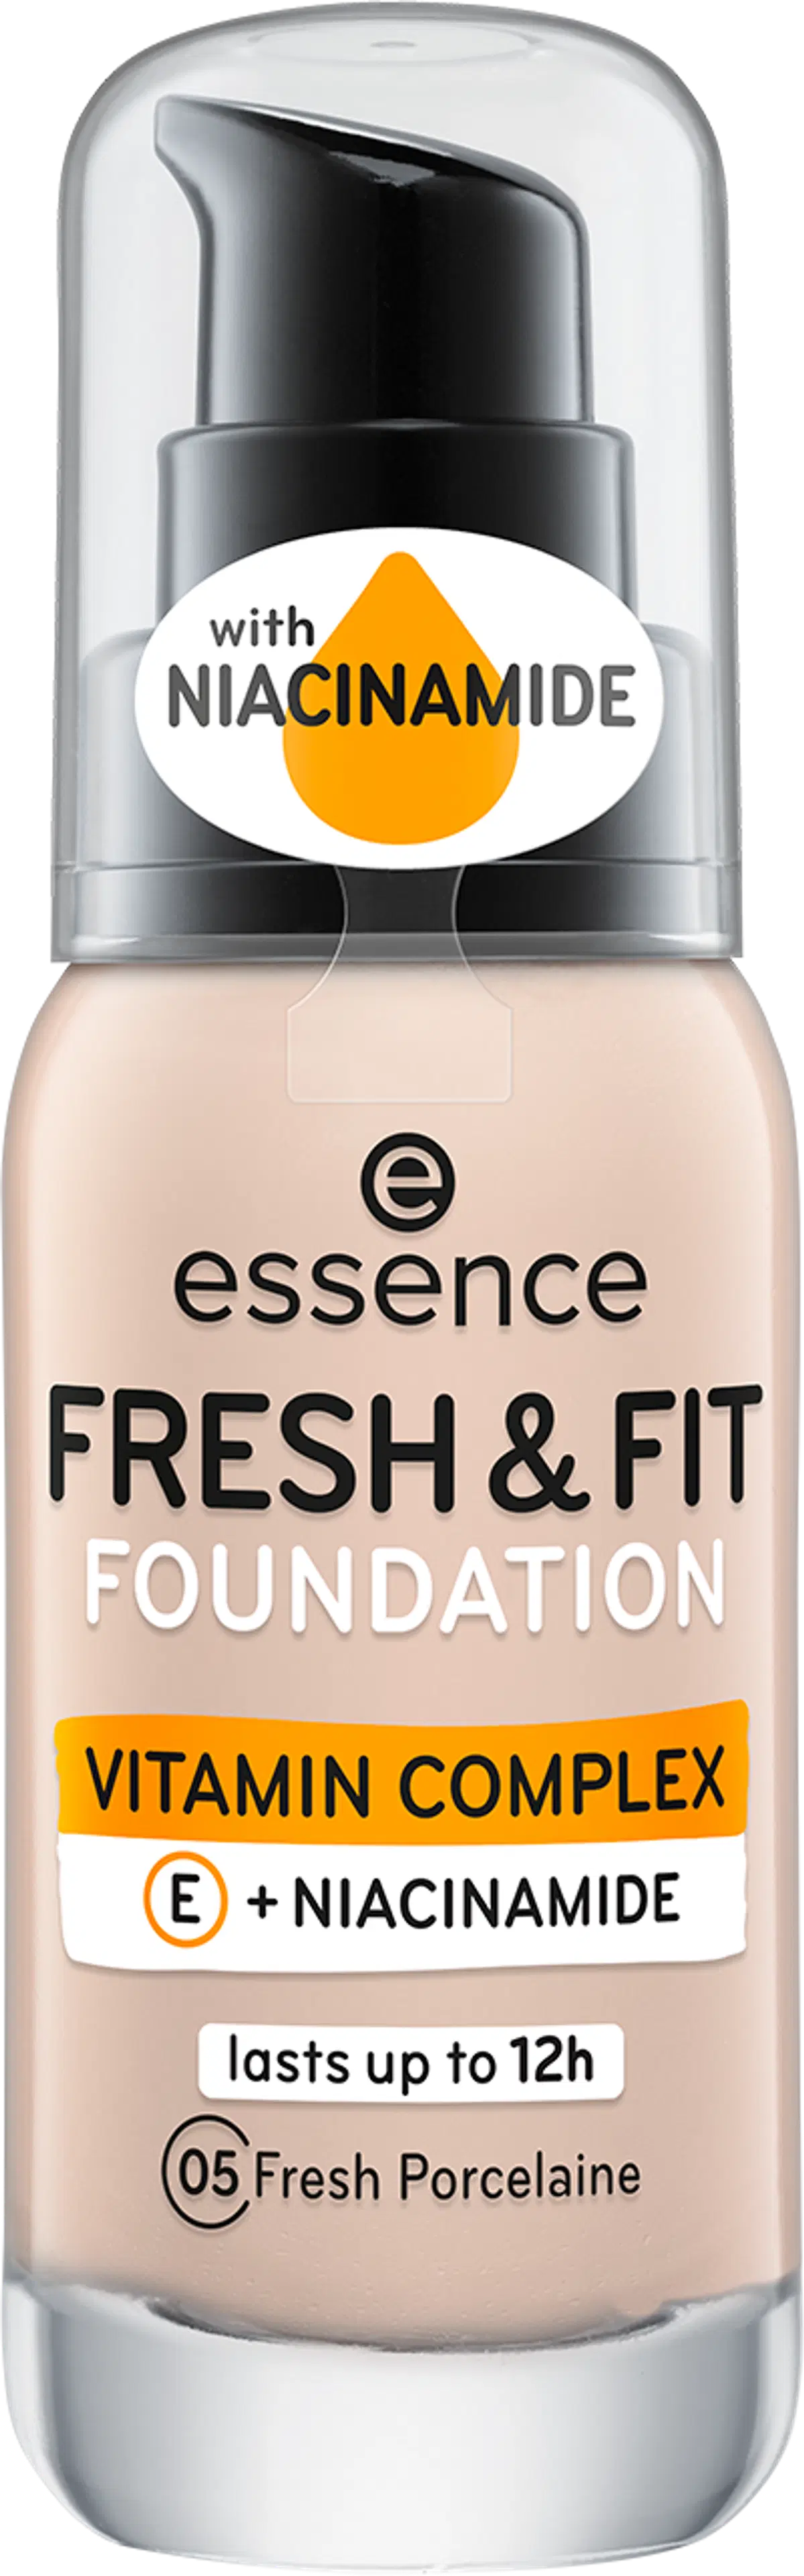 essence FRESH & FIT FOUNDATION meikkivoide 30 ml